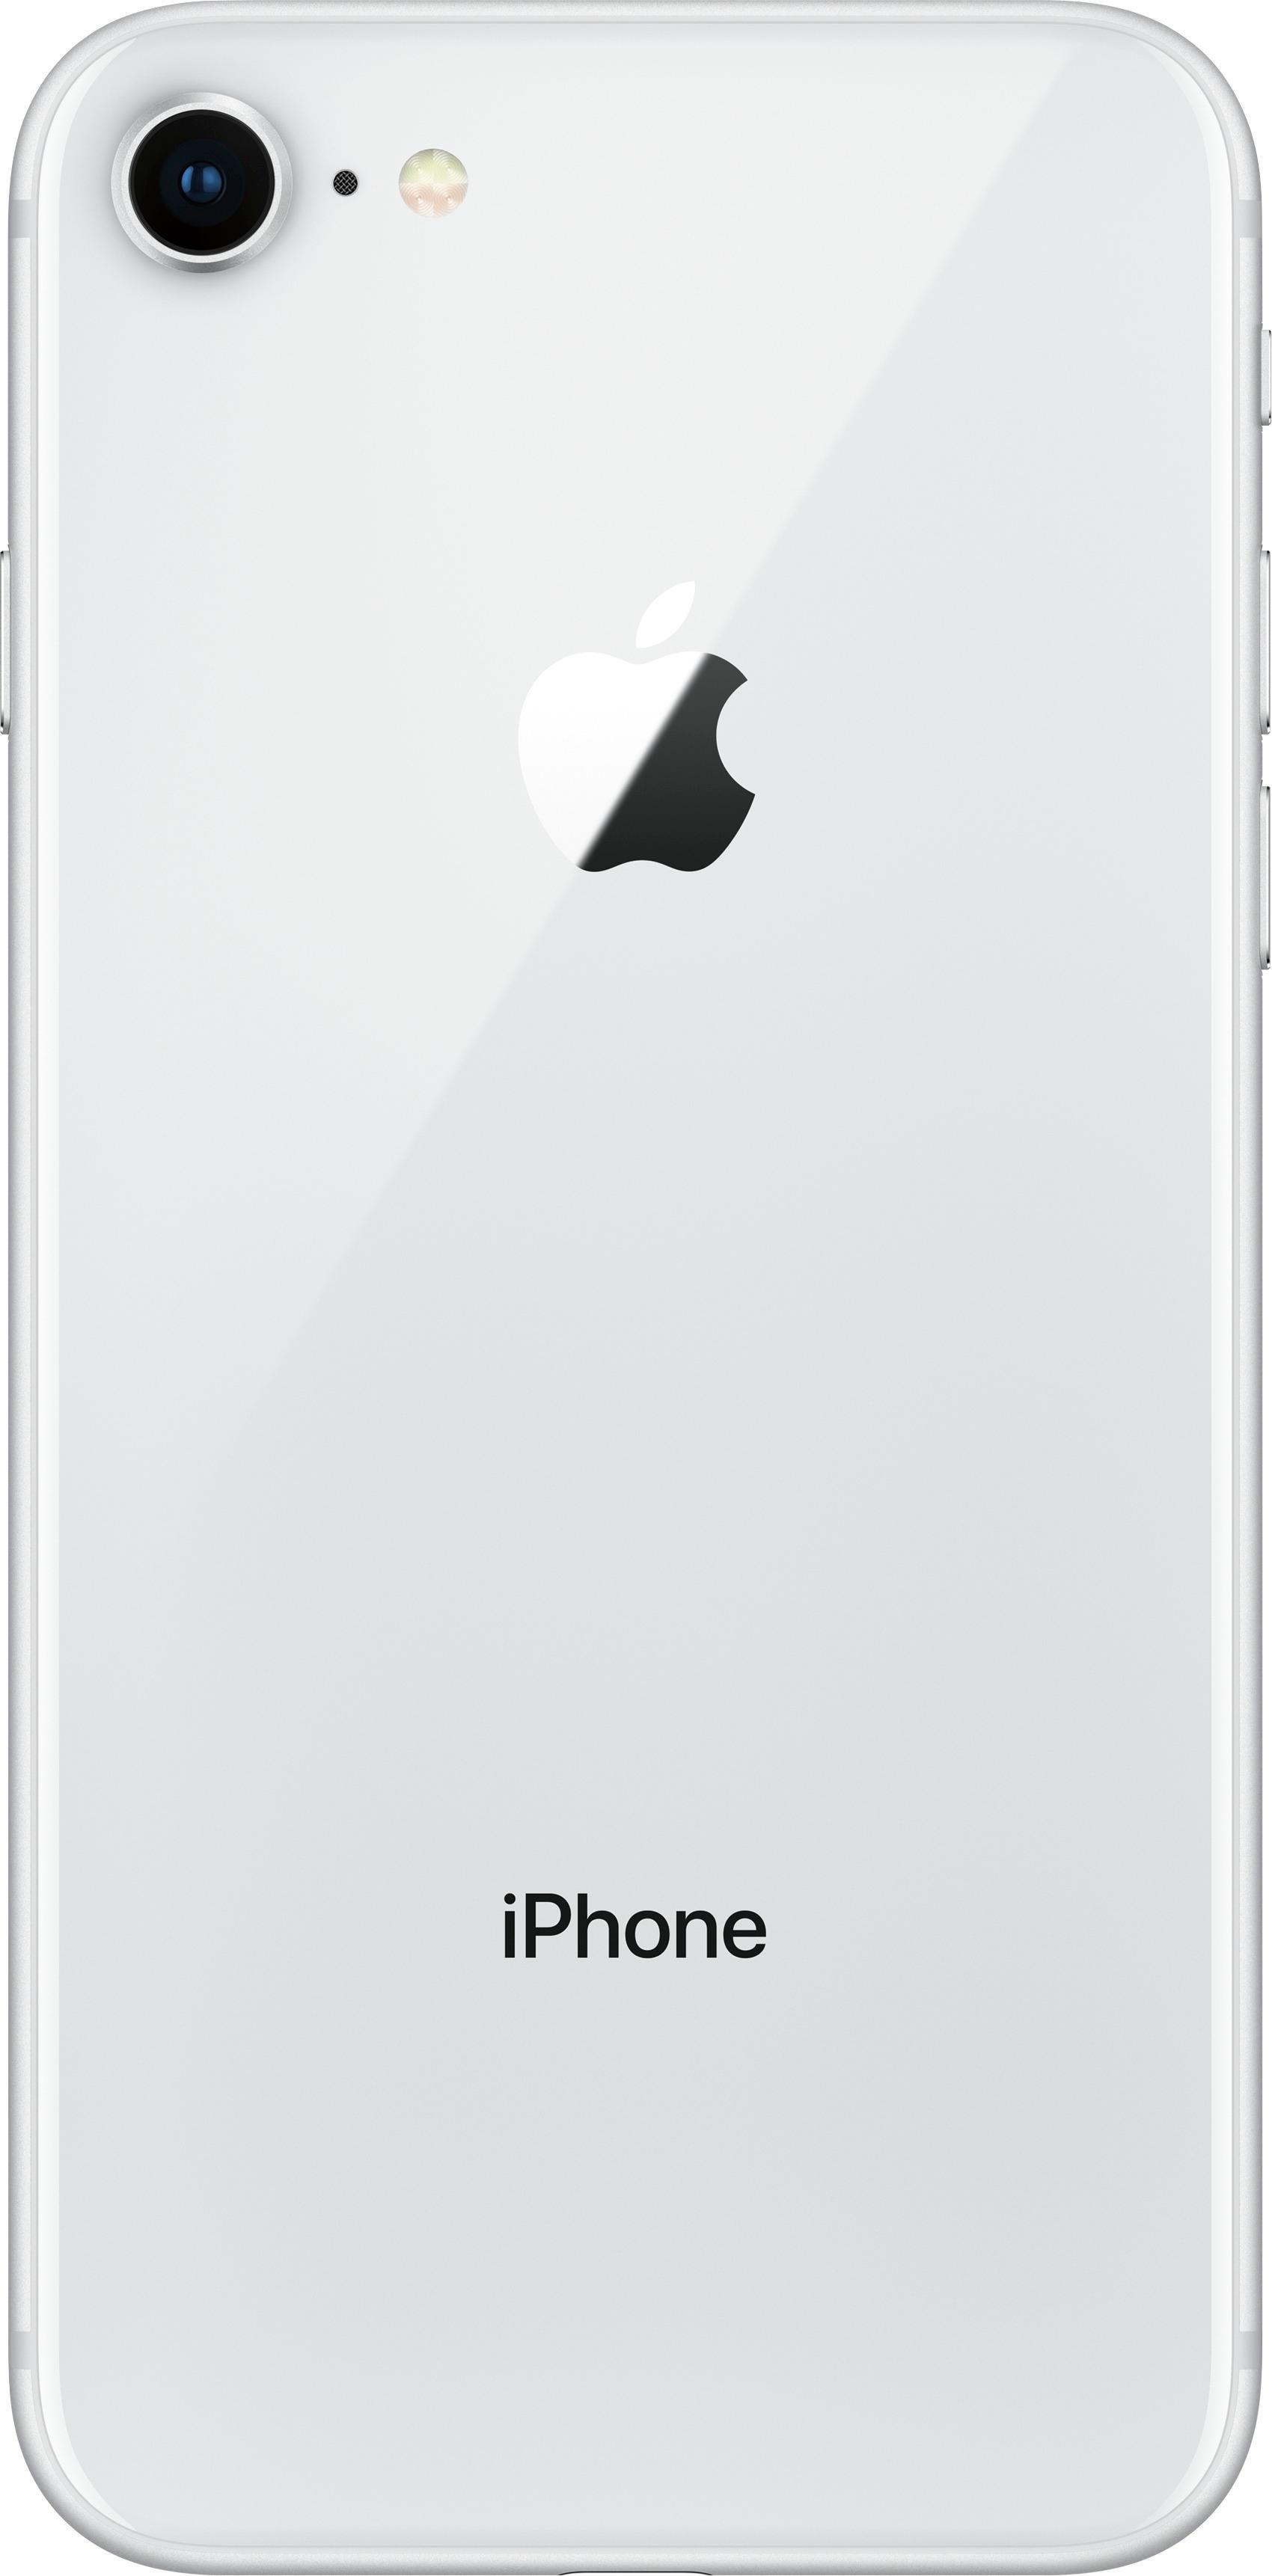 スマートフォン/携帯電話 スマートフォン本体 Best Buy: Apple iPhone 8 64GB Silver (AT&T) MQ6L2LL/A